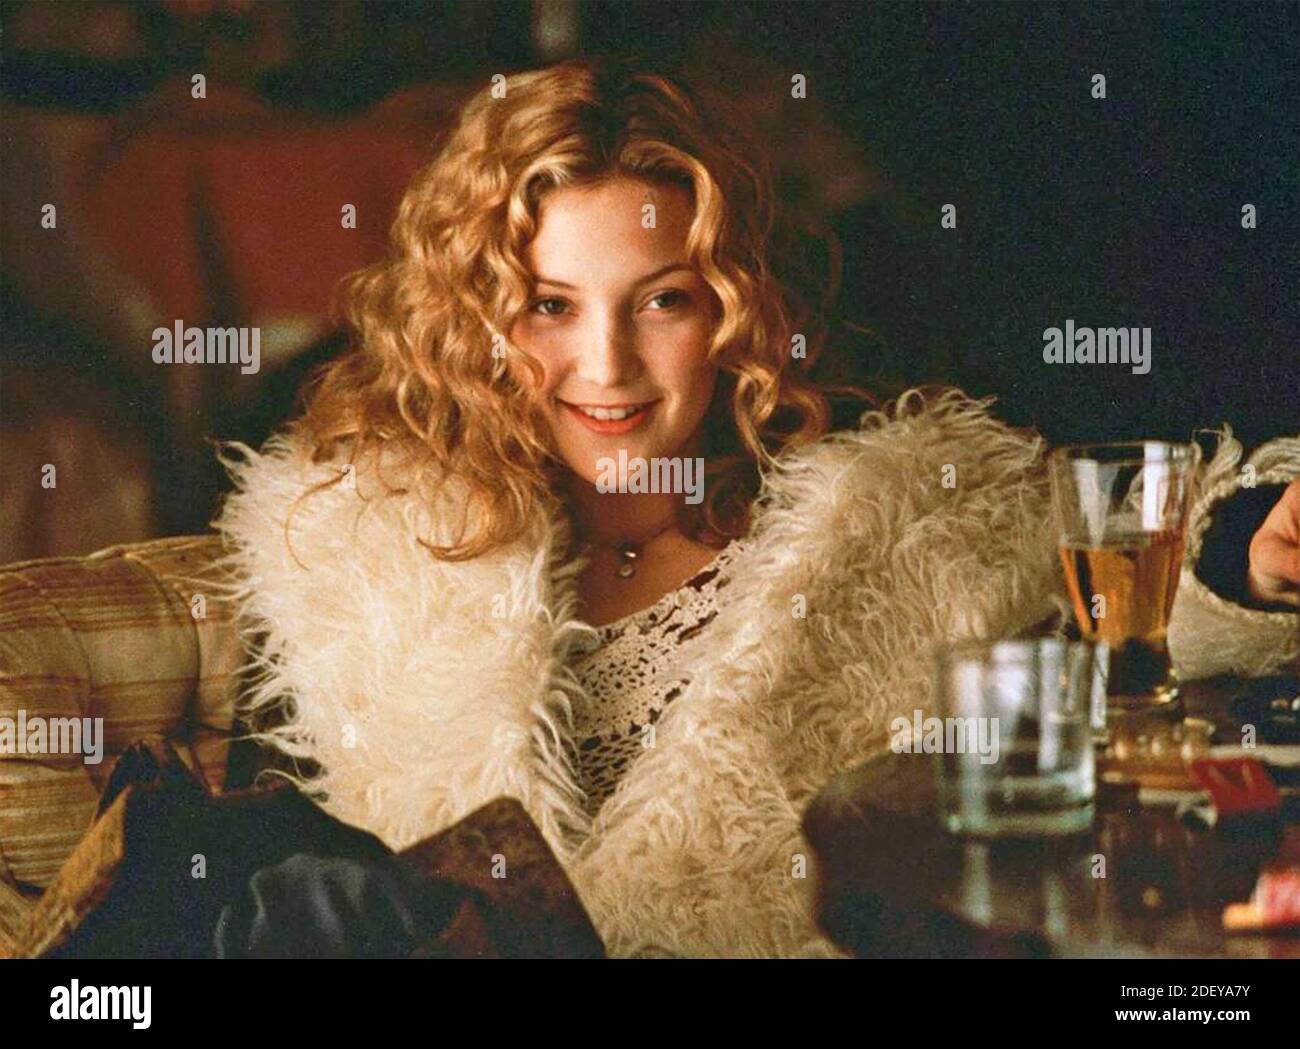 QUASI FAMOSO film di Sony Pictures del 2000 con Kate Hudson Foto Stock